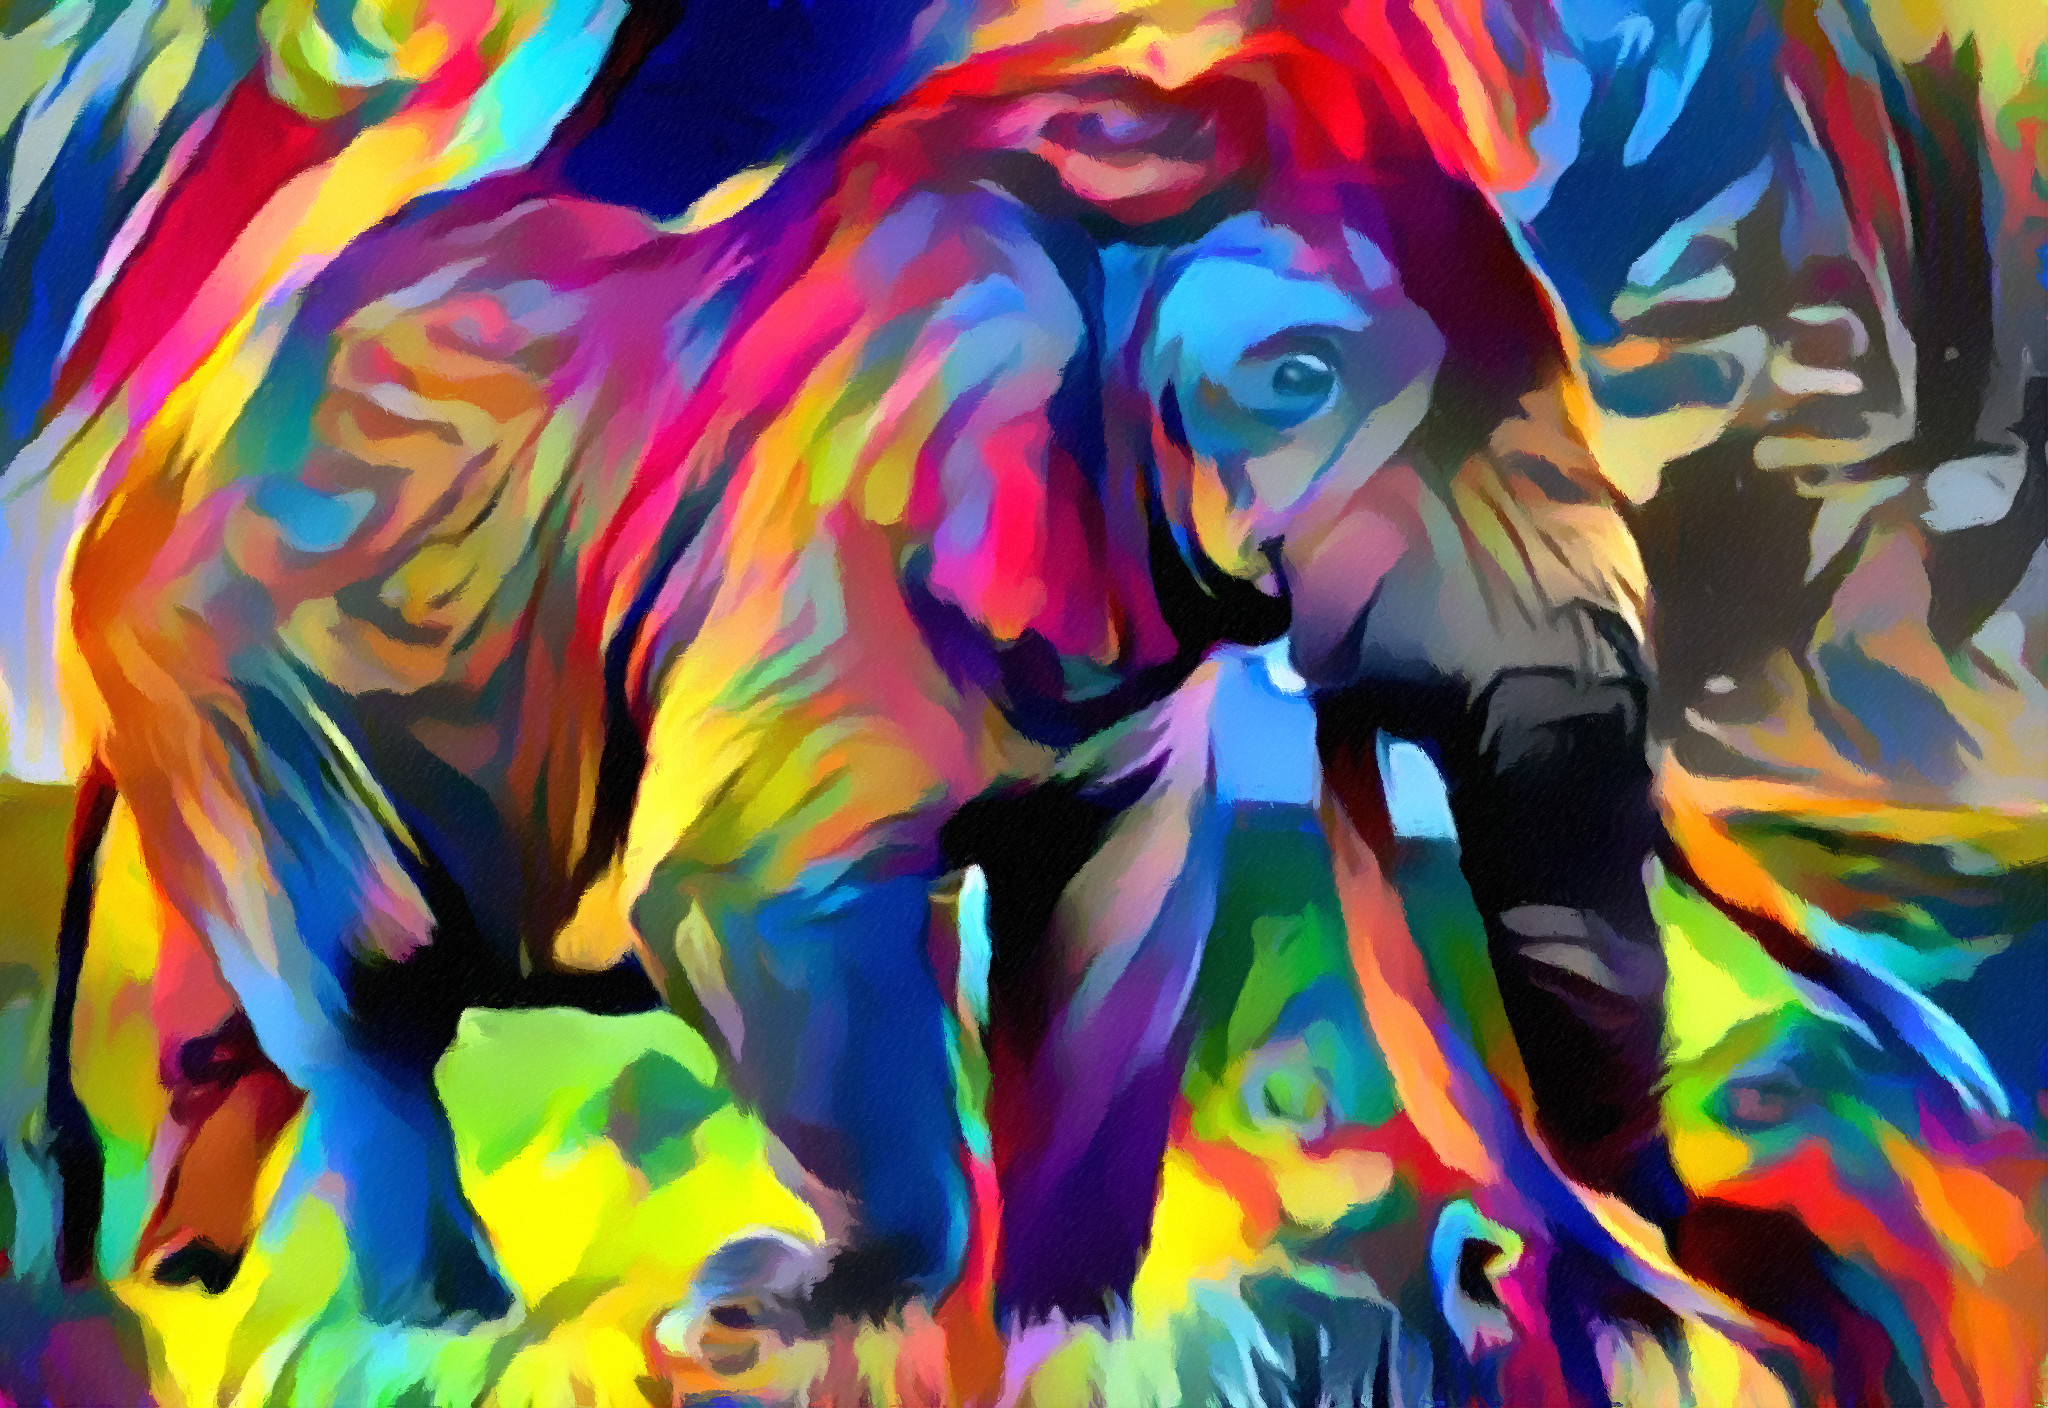 elephant_multicolor2_by_trandoductin-d9a2asm.jpg